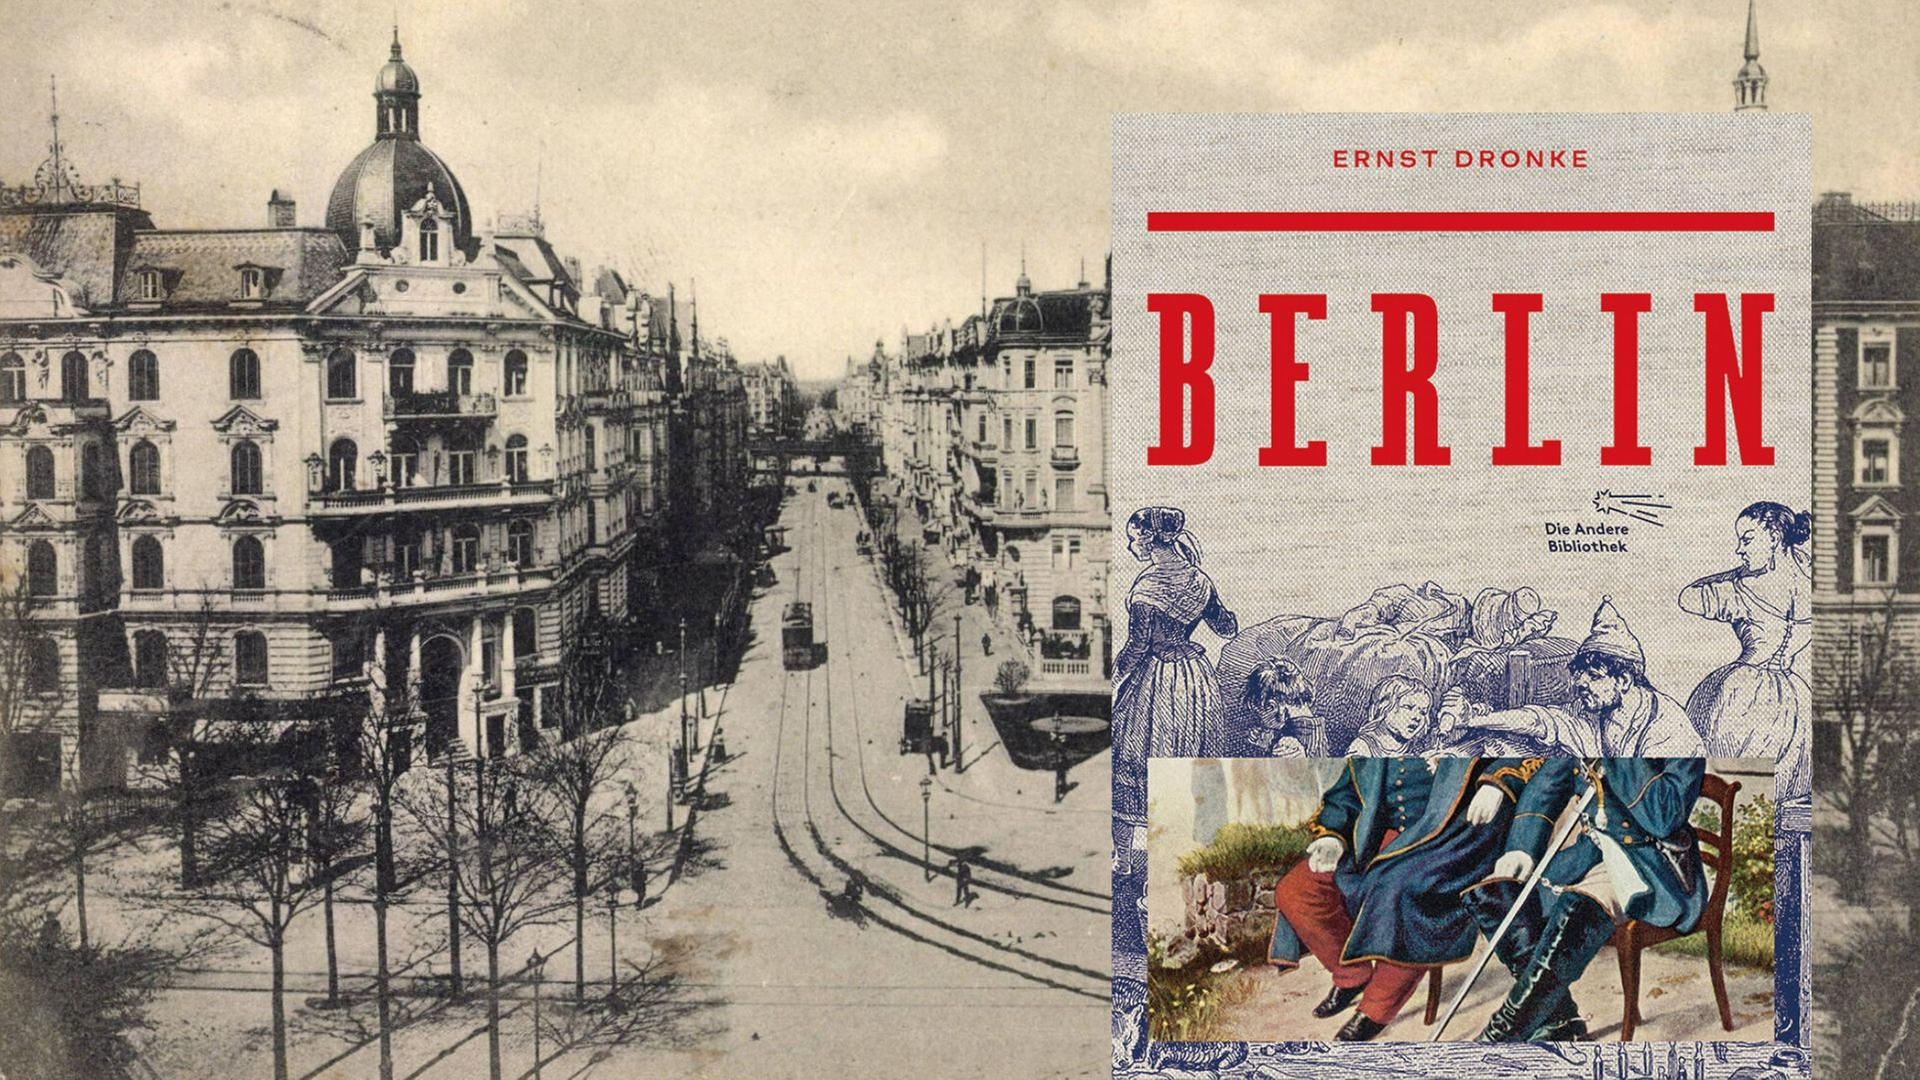 Buchcover: Ernst Dronke: „Berlin“ und historische Aufnahme Berlin Kurfürstendamm